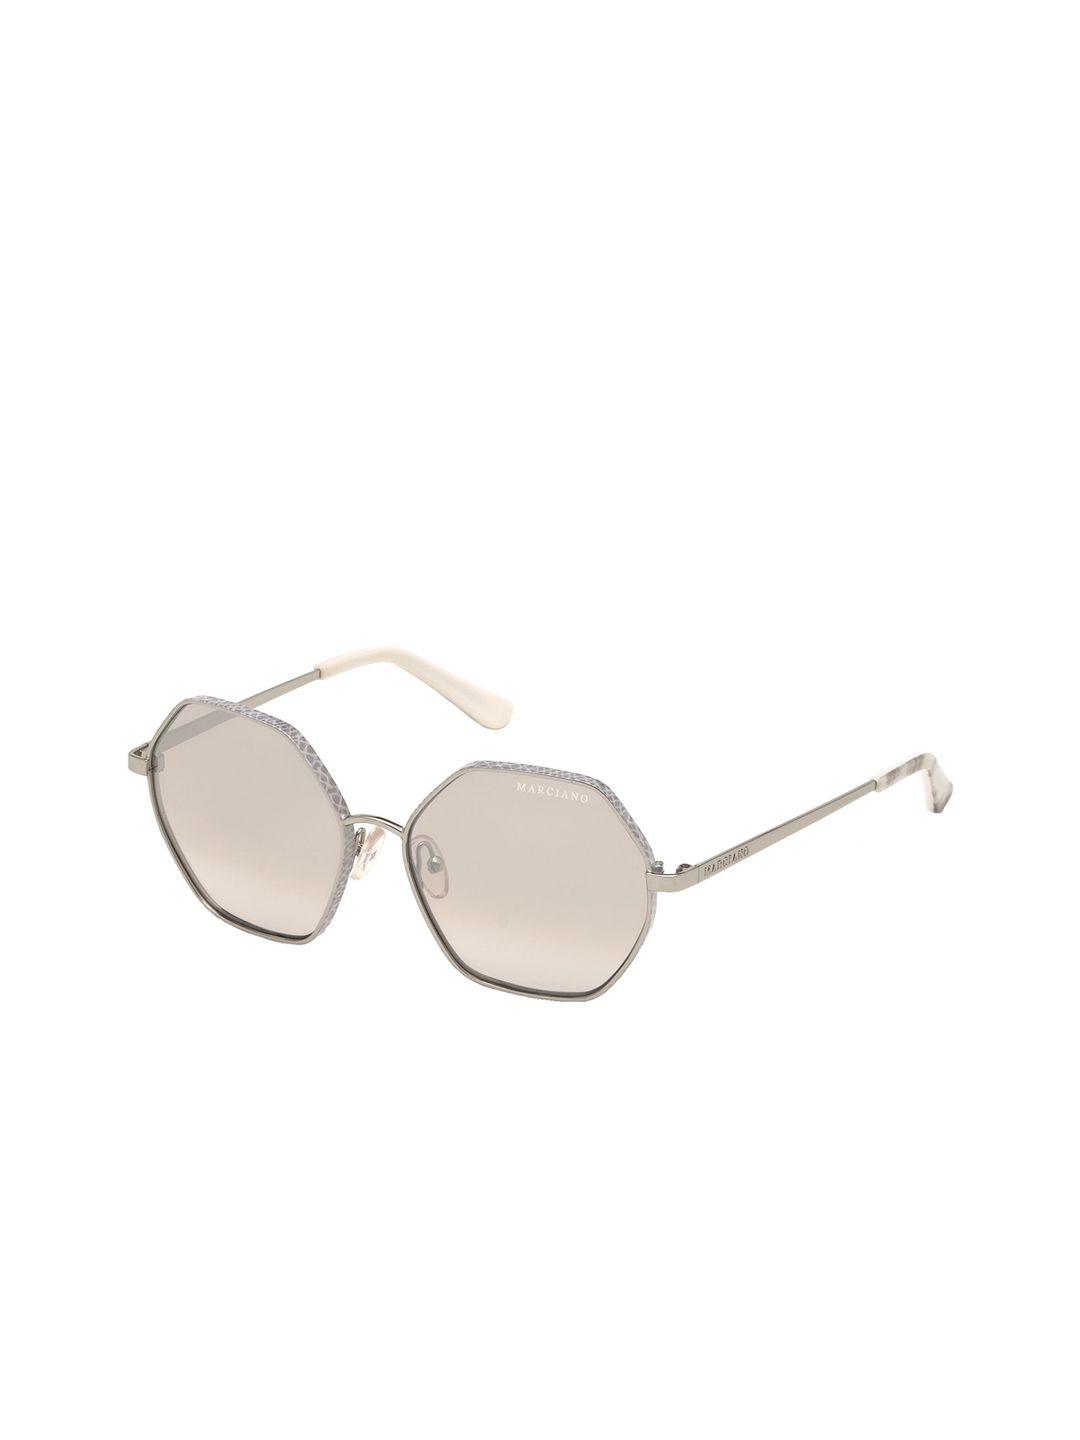 guess women silver-toned aviator sunglasses gm0800 55 10z